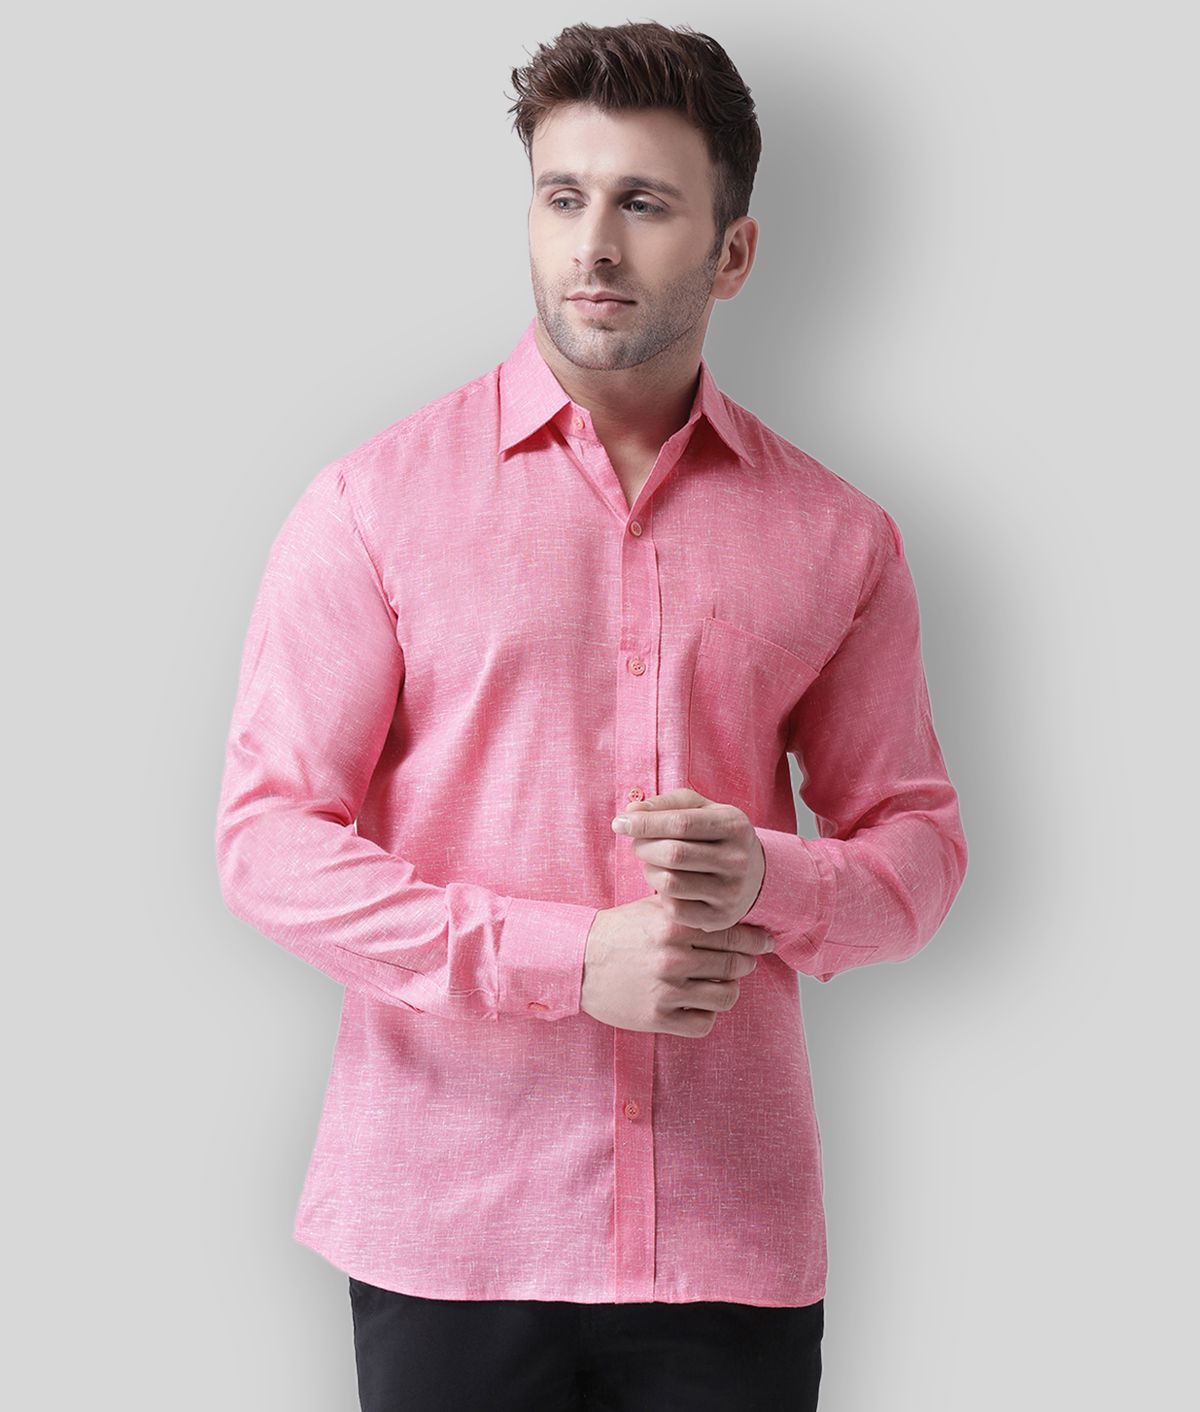     			RIAG - Pink Linen Regular Fit Men's Casual Shirt (Pack of 1)